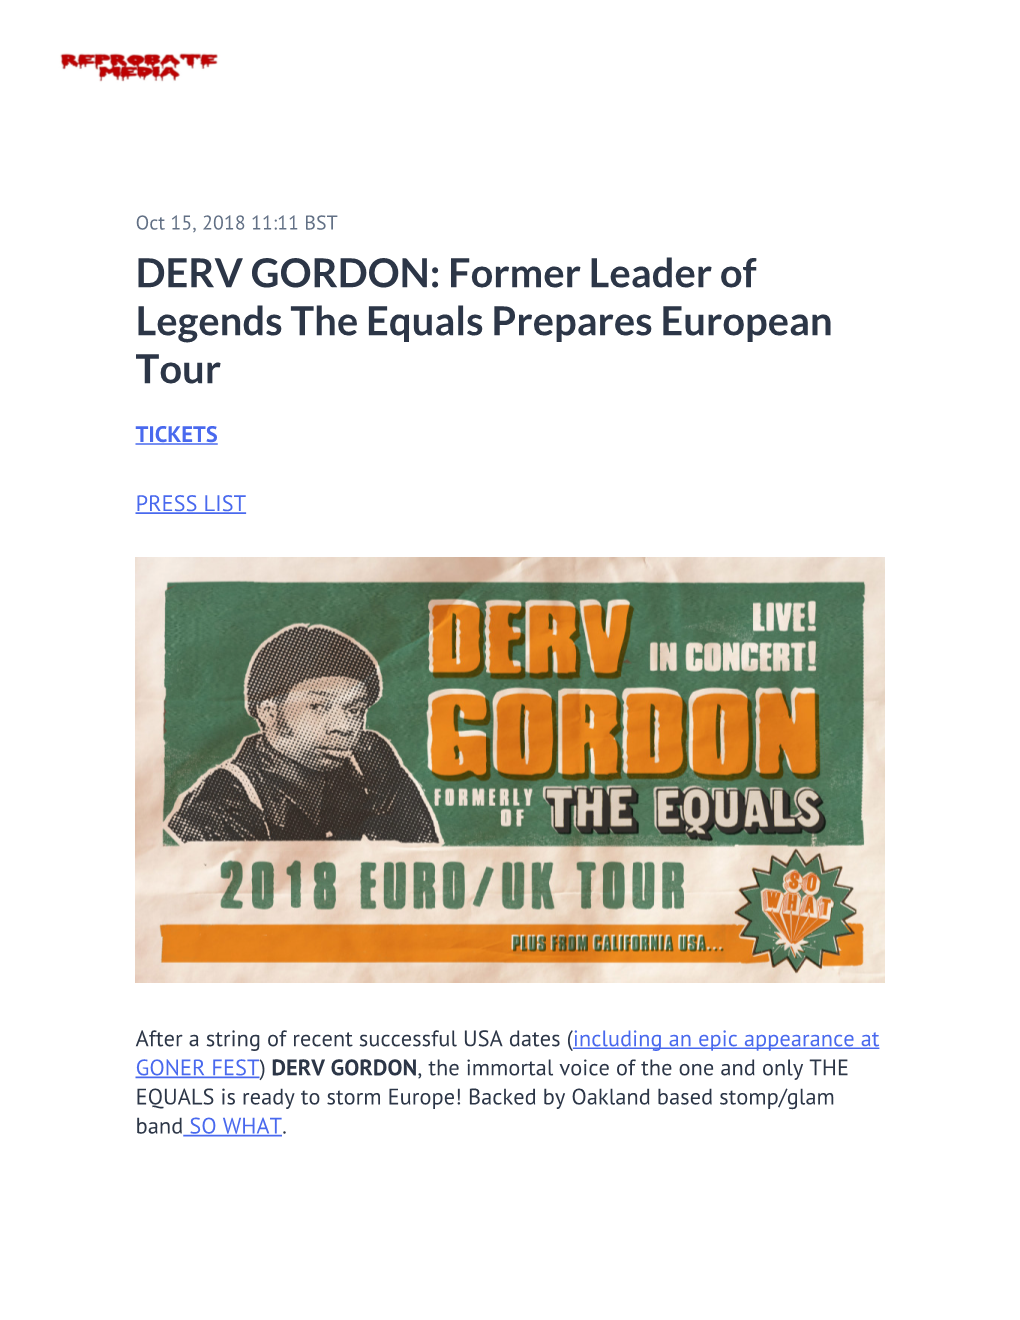 DERV GORDON: Former Leader of Legends the Equals Prepares European Tour